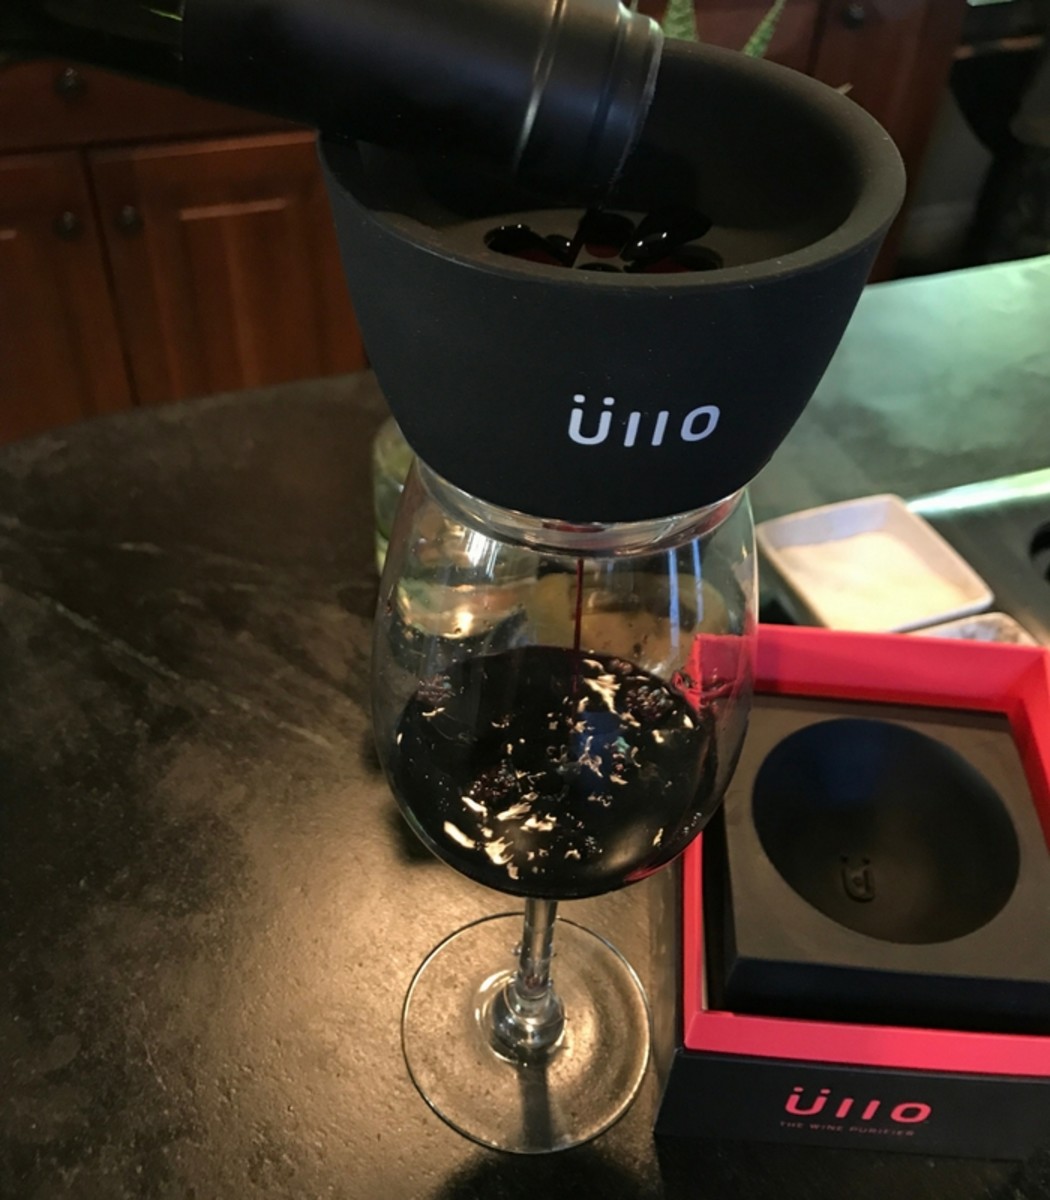 Ullo wine filter